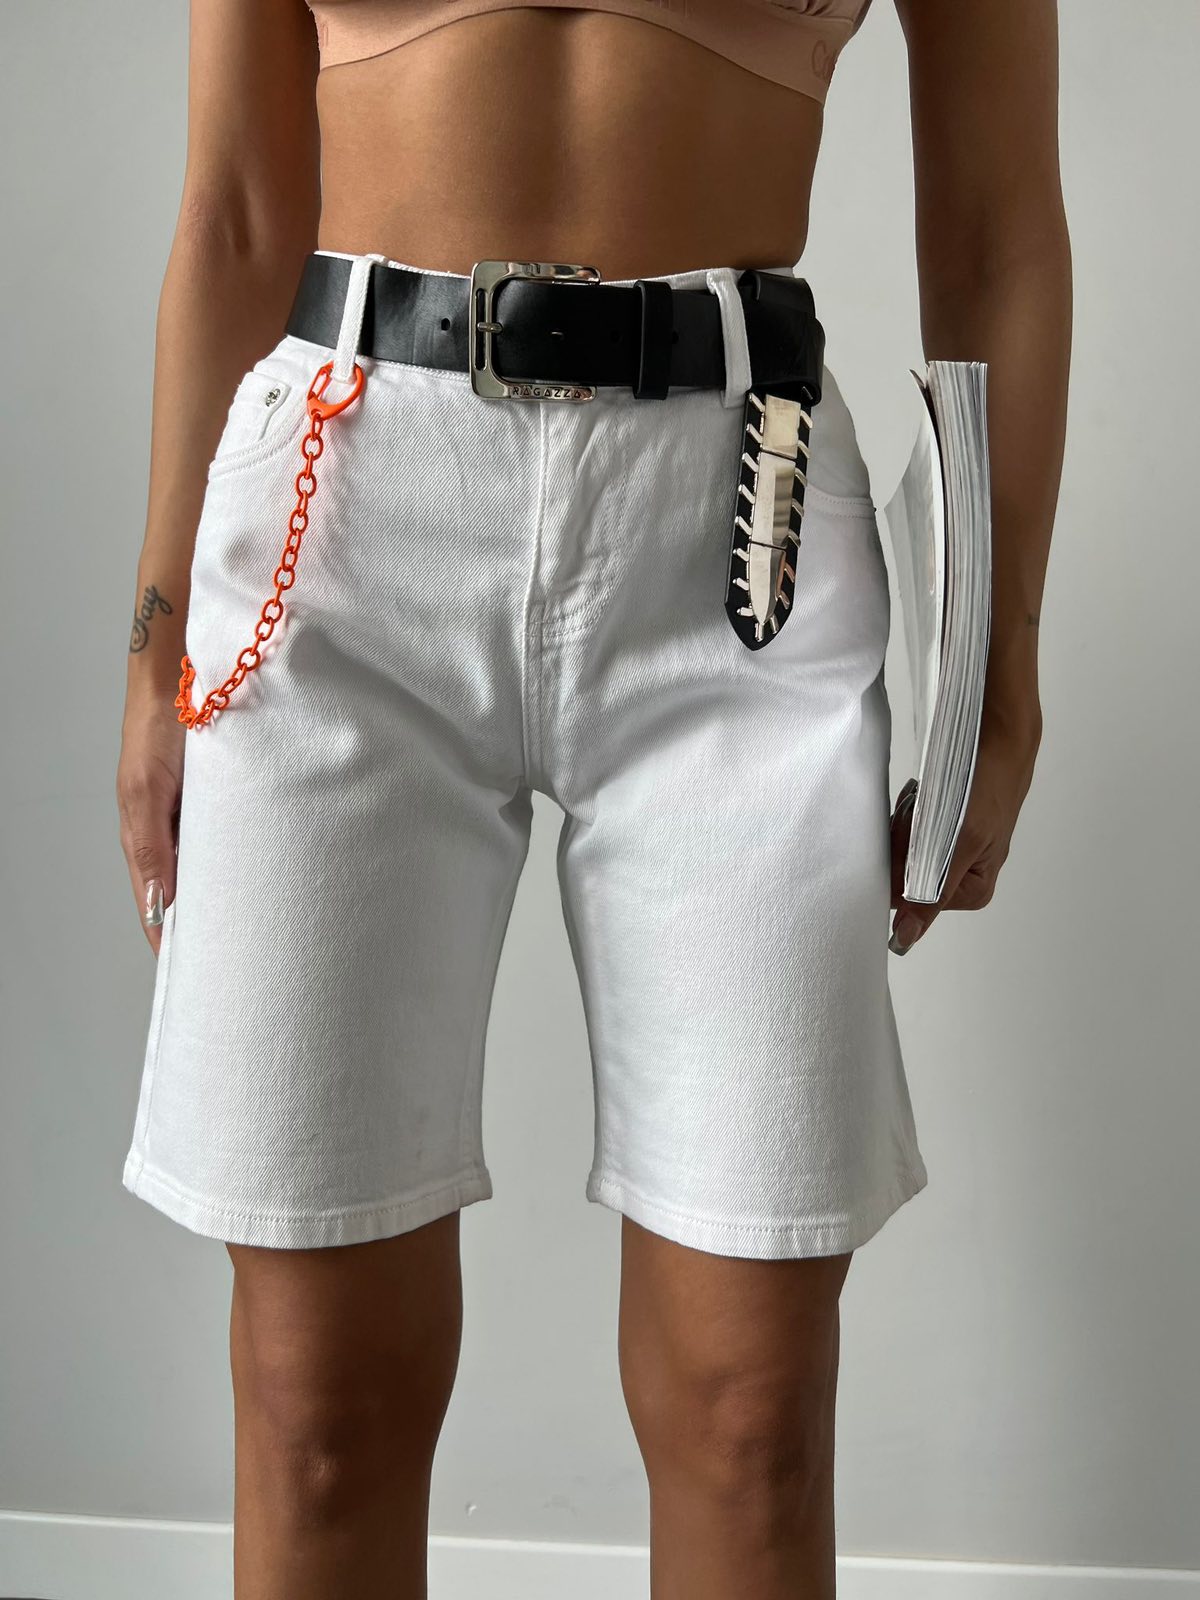 Дамски панталони ANINA  https://bvseductive.com/products/дамски-панталони-yanina  къси панталонки с колан в бял цвят в широка кройка с висока талия можете да кобминирате с топ или тениска чудесно допълнение към Вашата визия